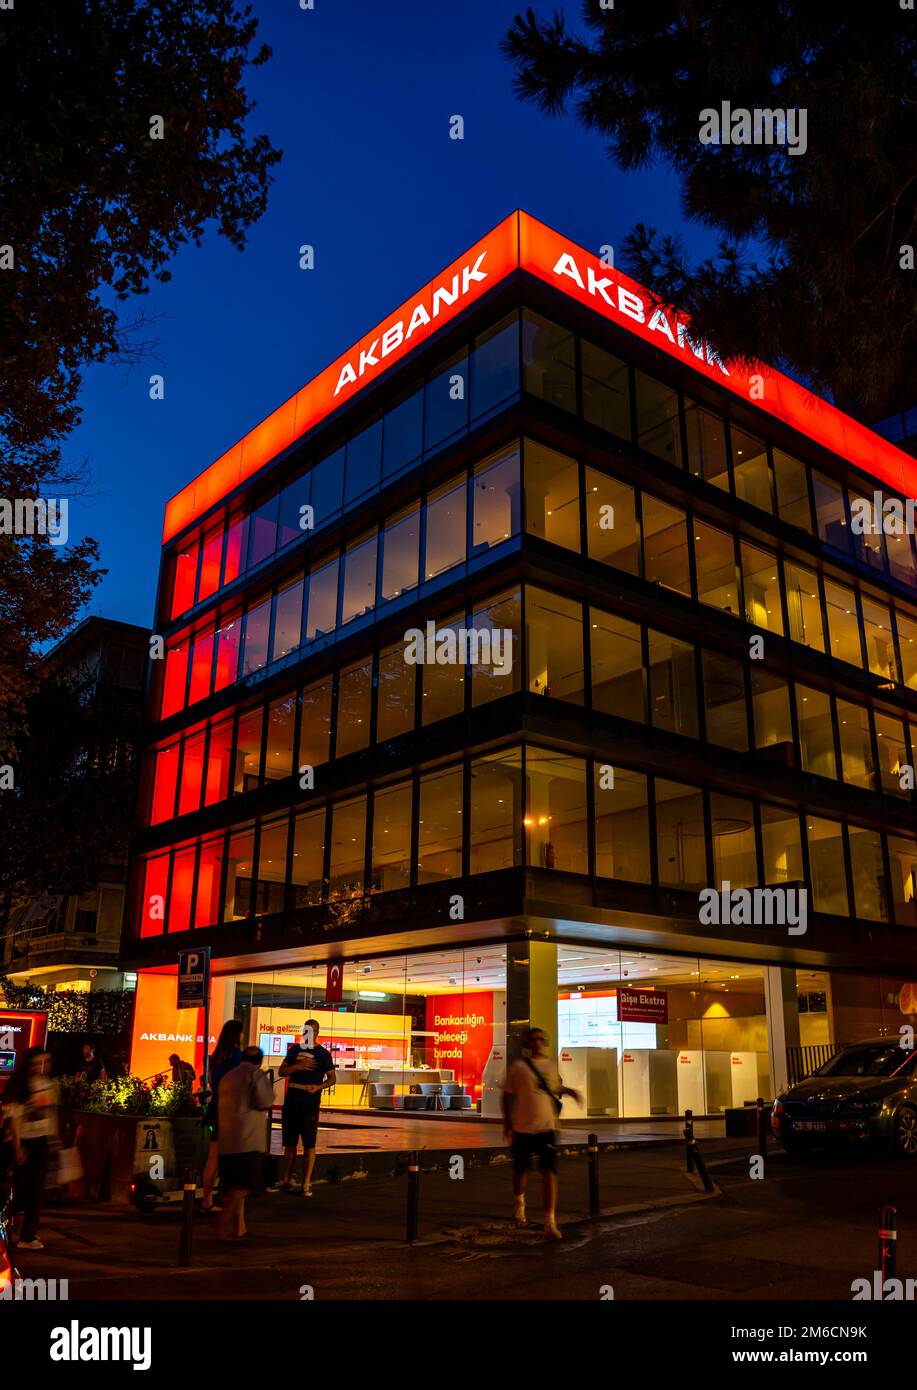 Edificio de oficinas AkBank iluminado por la noche. Bancos en kadikoy, Estambul, Turquía Foto de stock